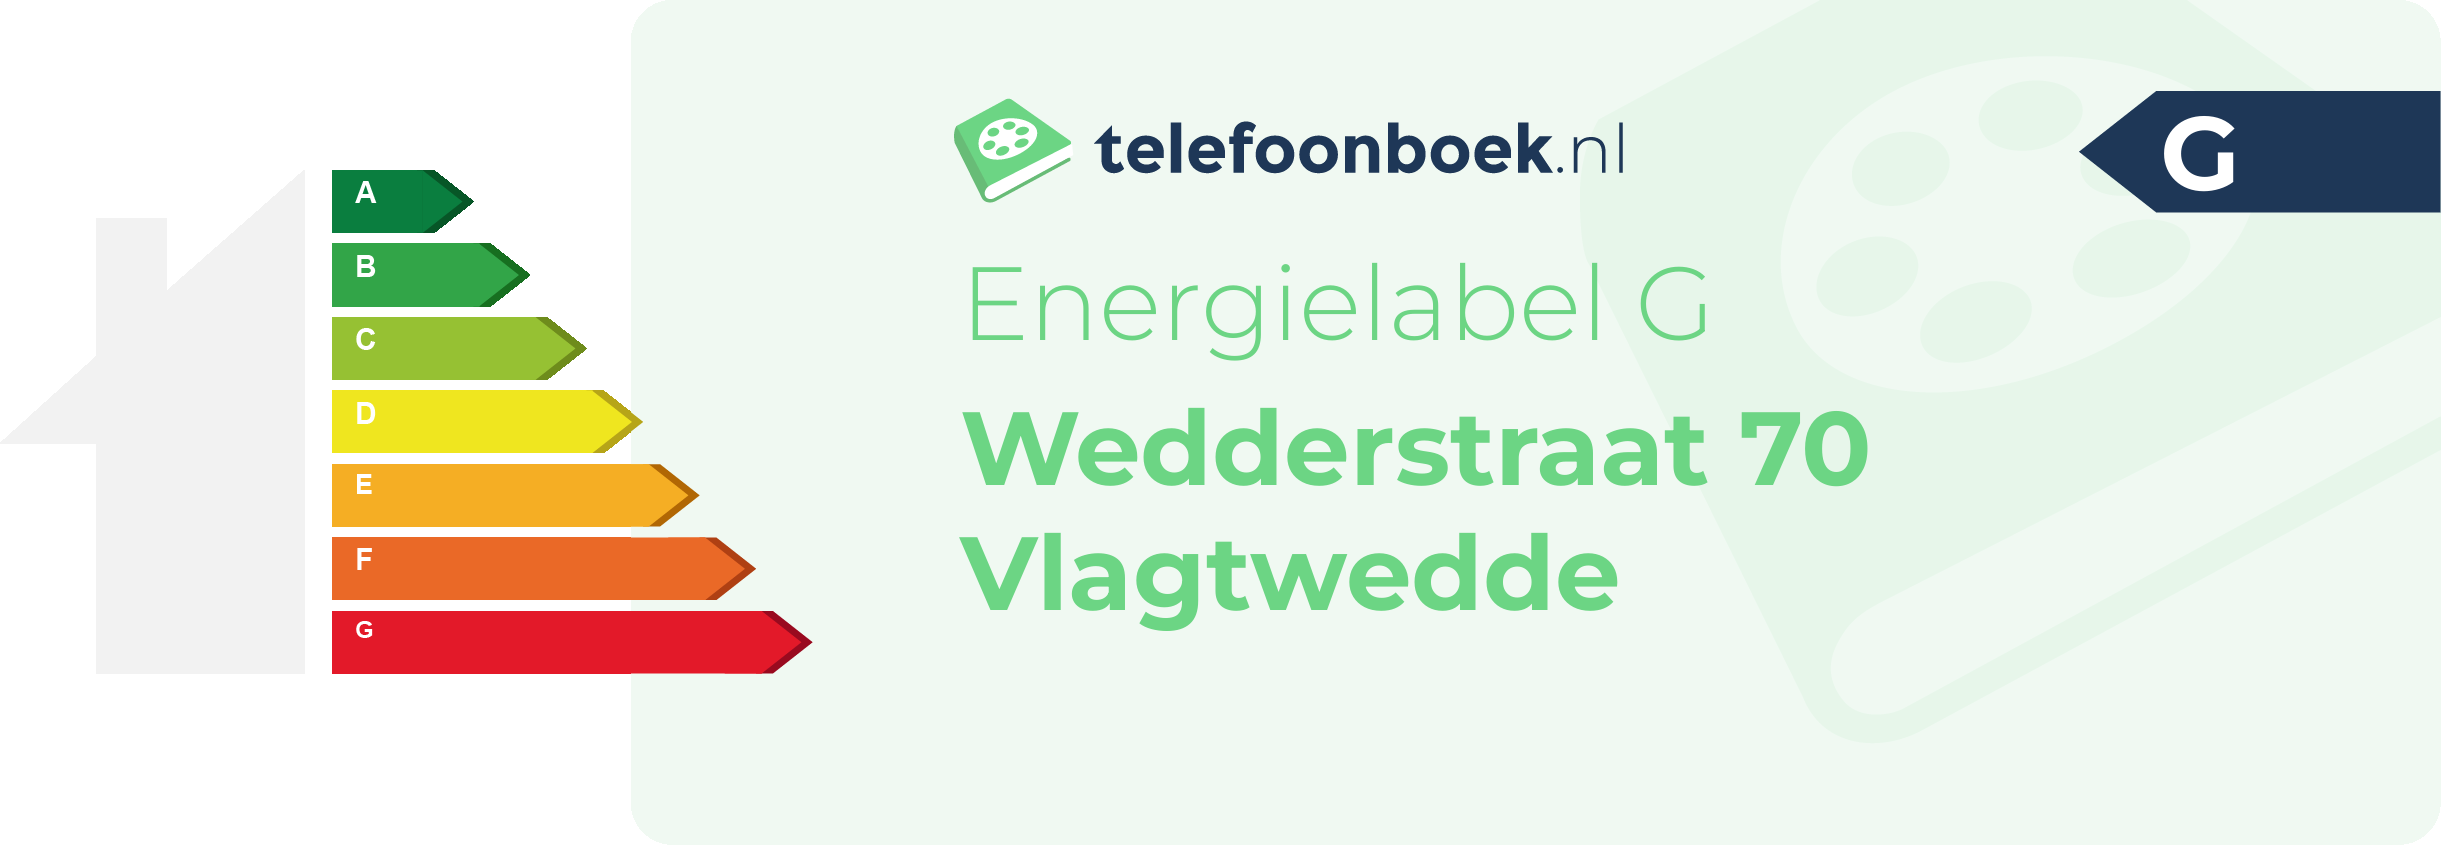 Energielabel Wedderstraat 70 Vlagtwedde